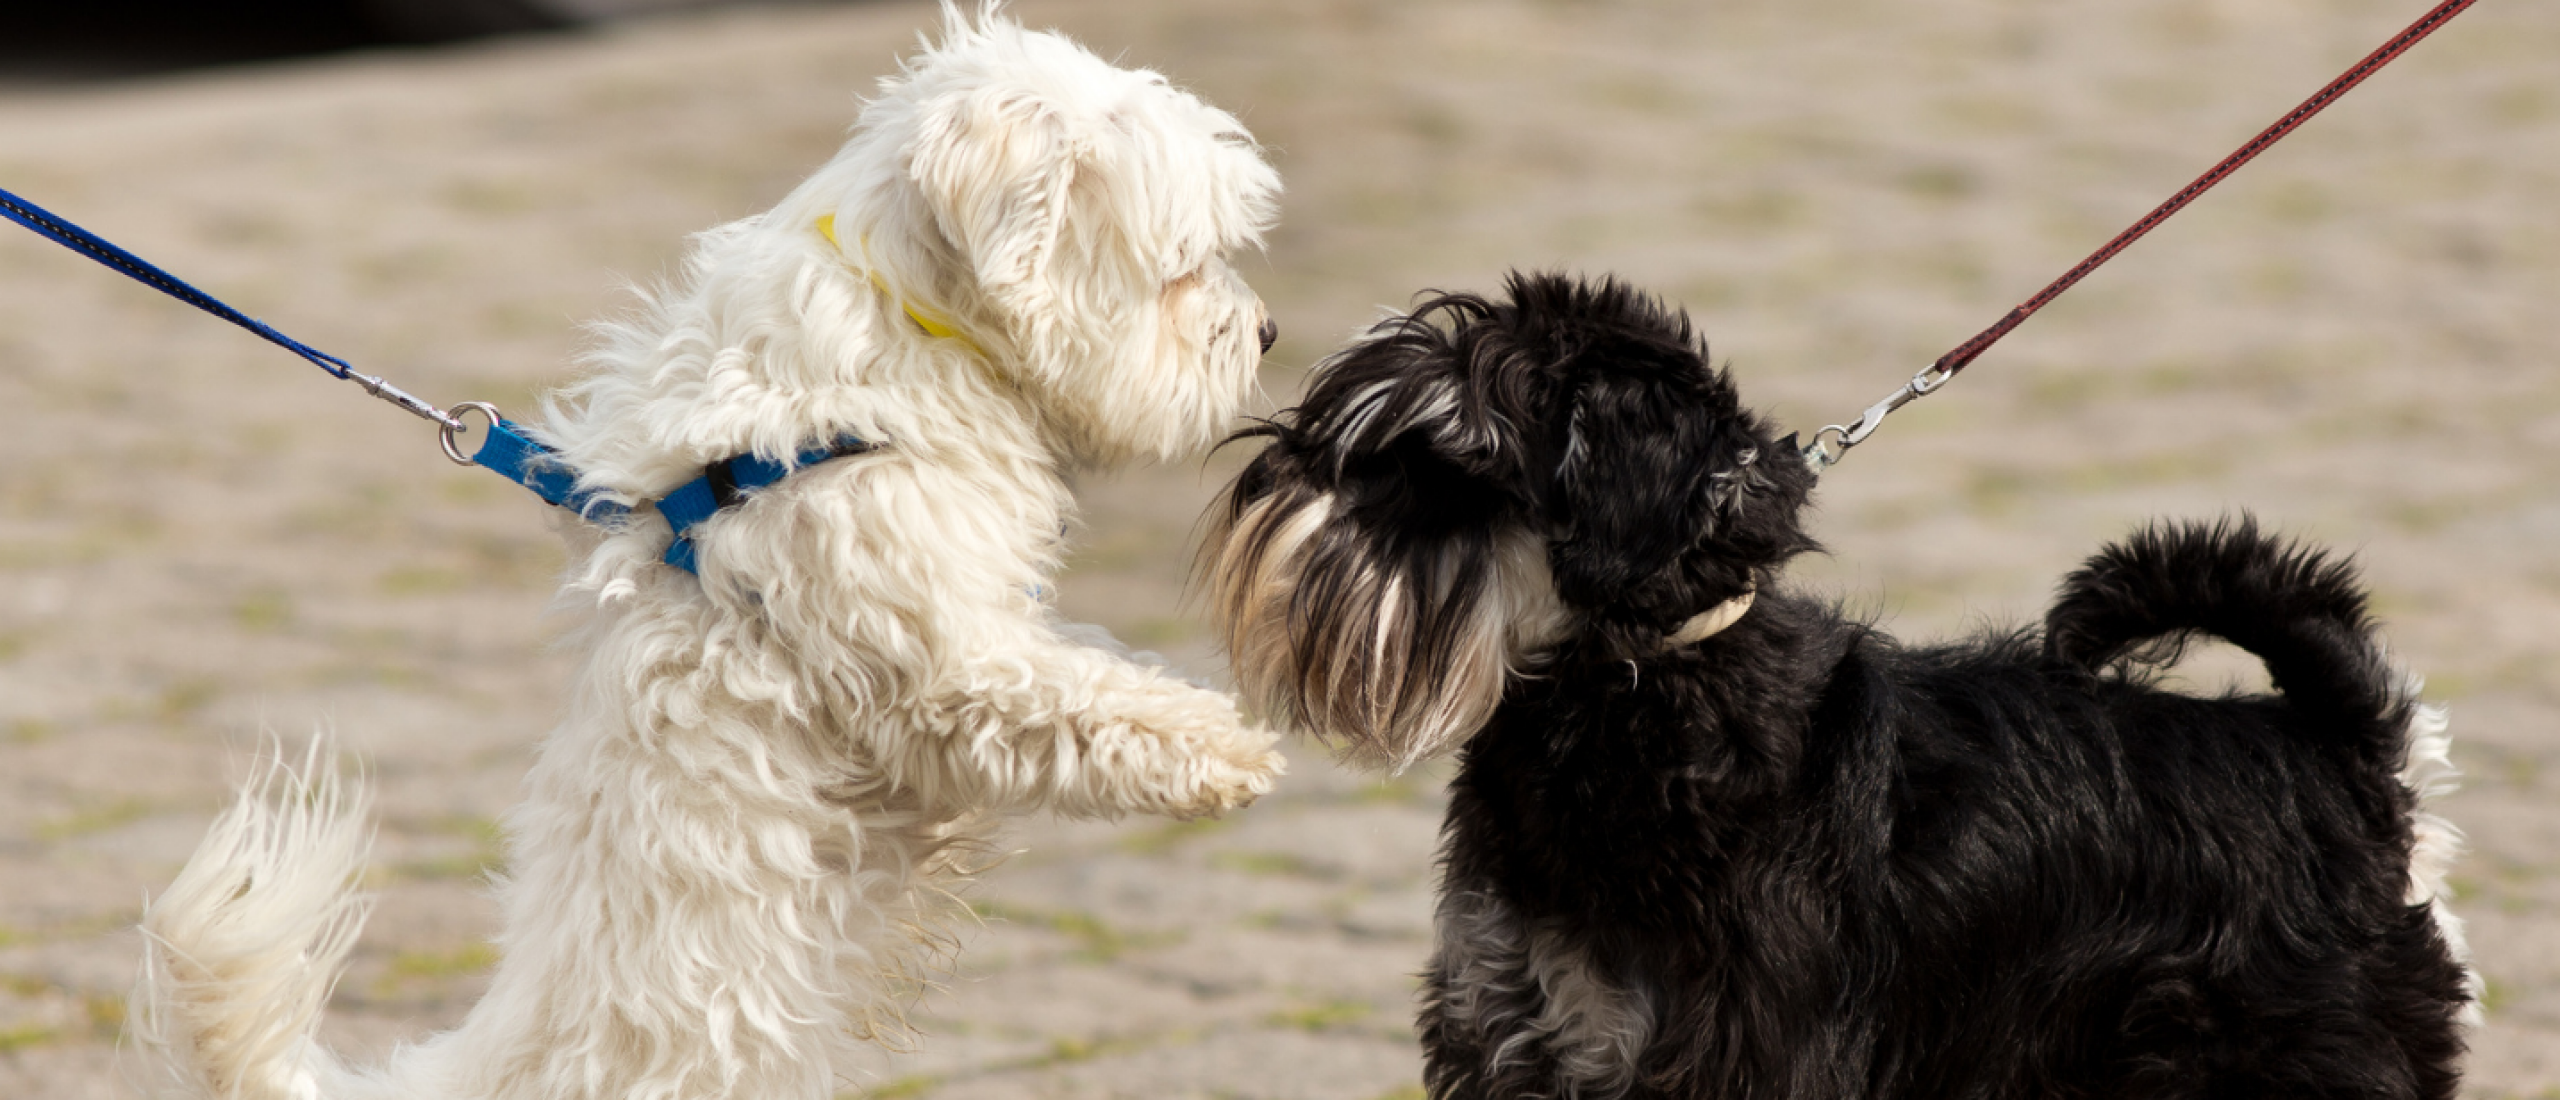 Honden aangelijnd kennis laten maken met elkaar